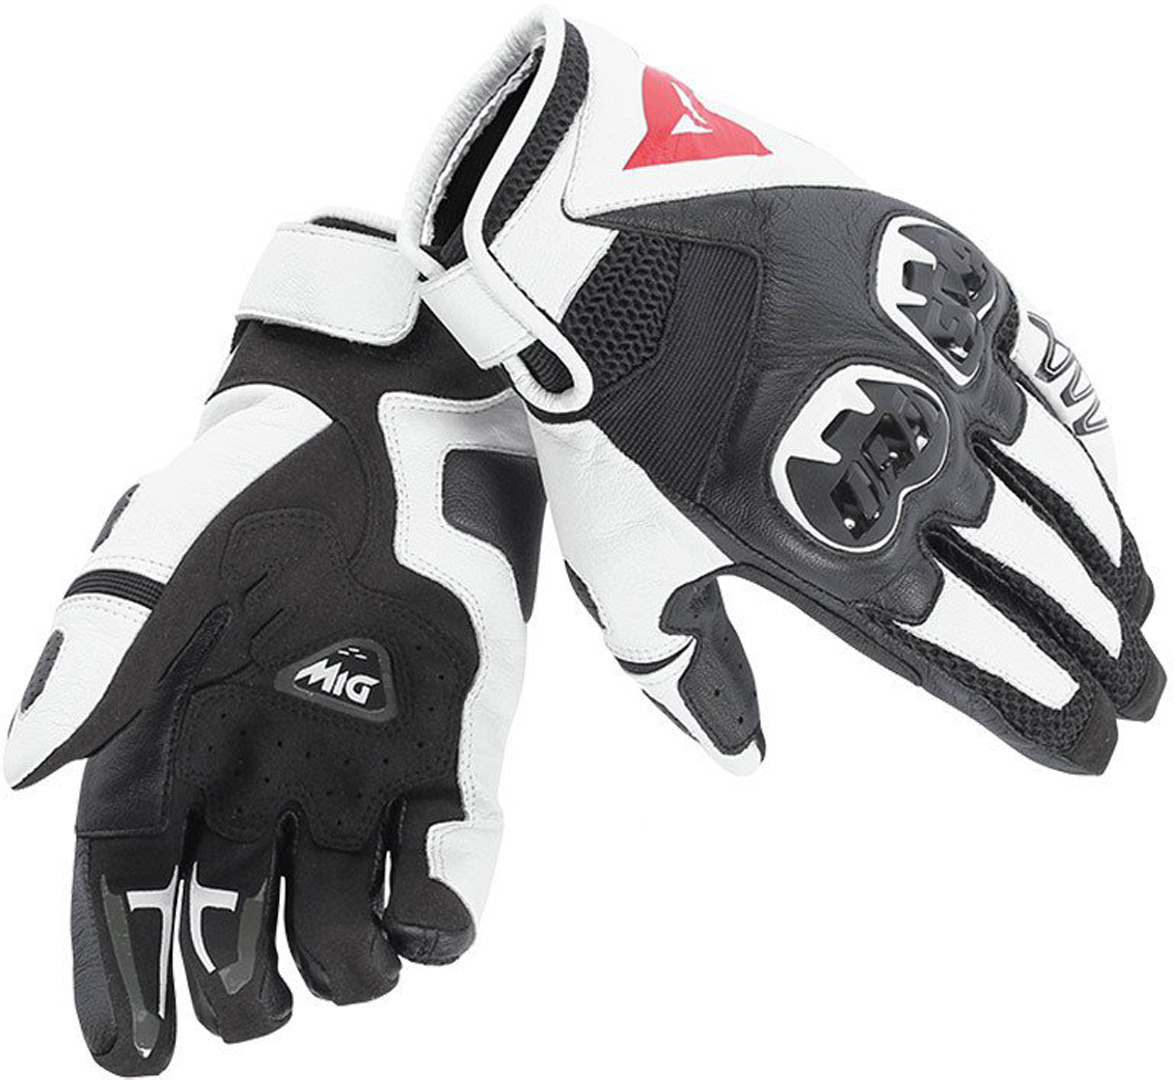 Dainese Mig C2 Motorfiets handschoenen, zwart-wit, afmeting 2XL